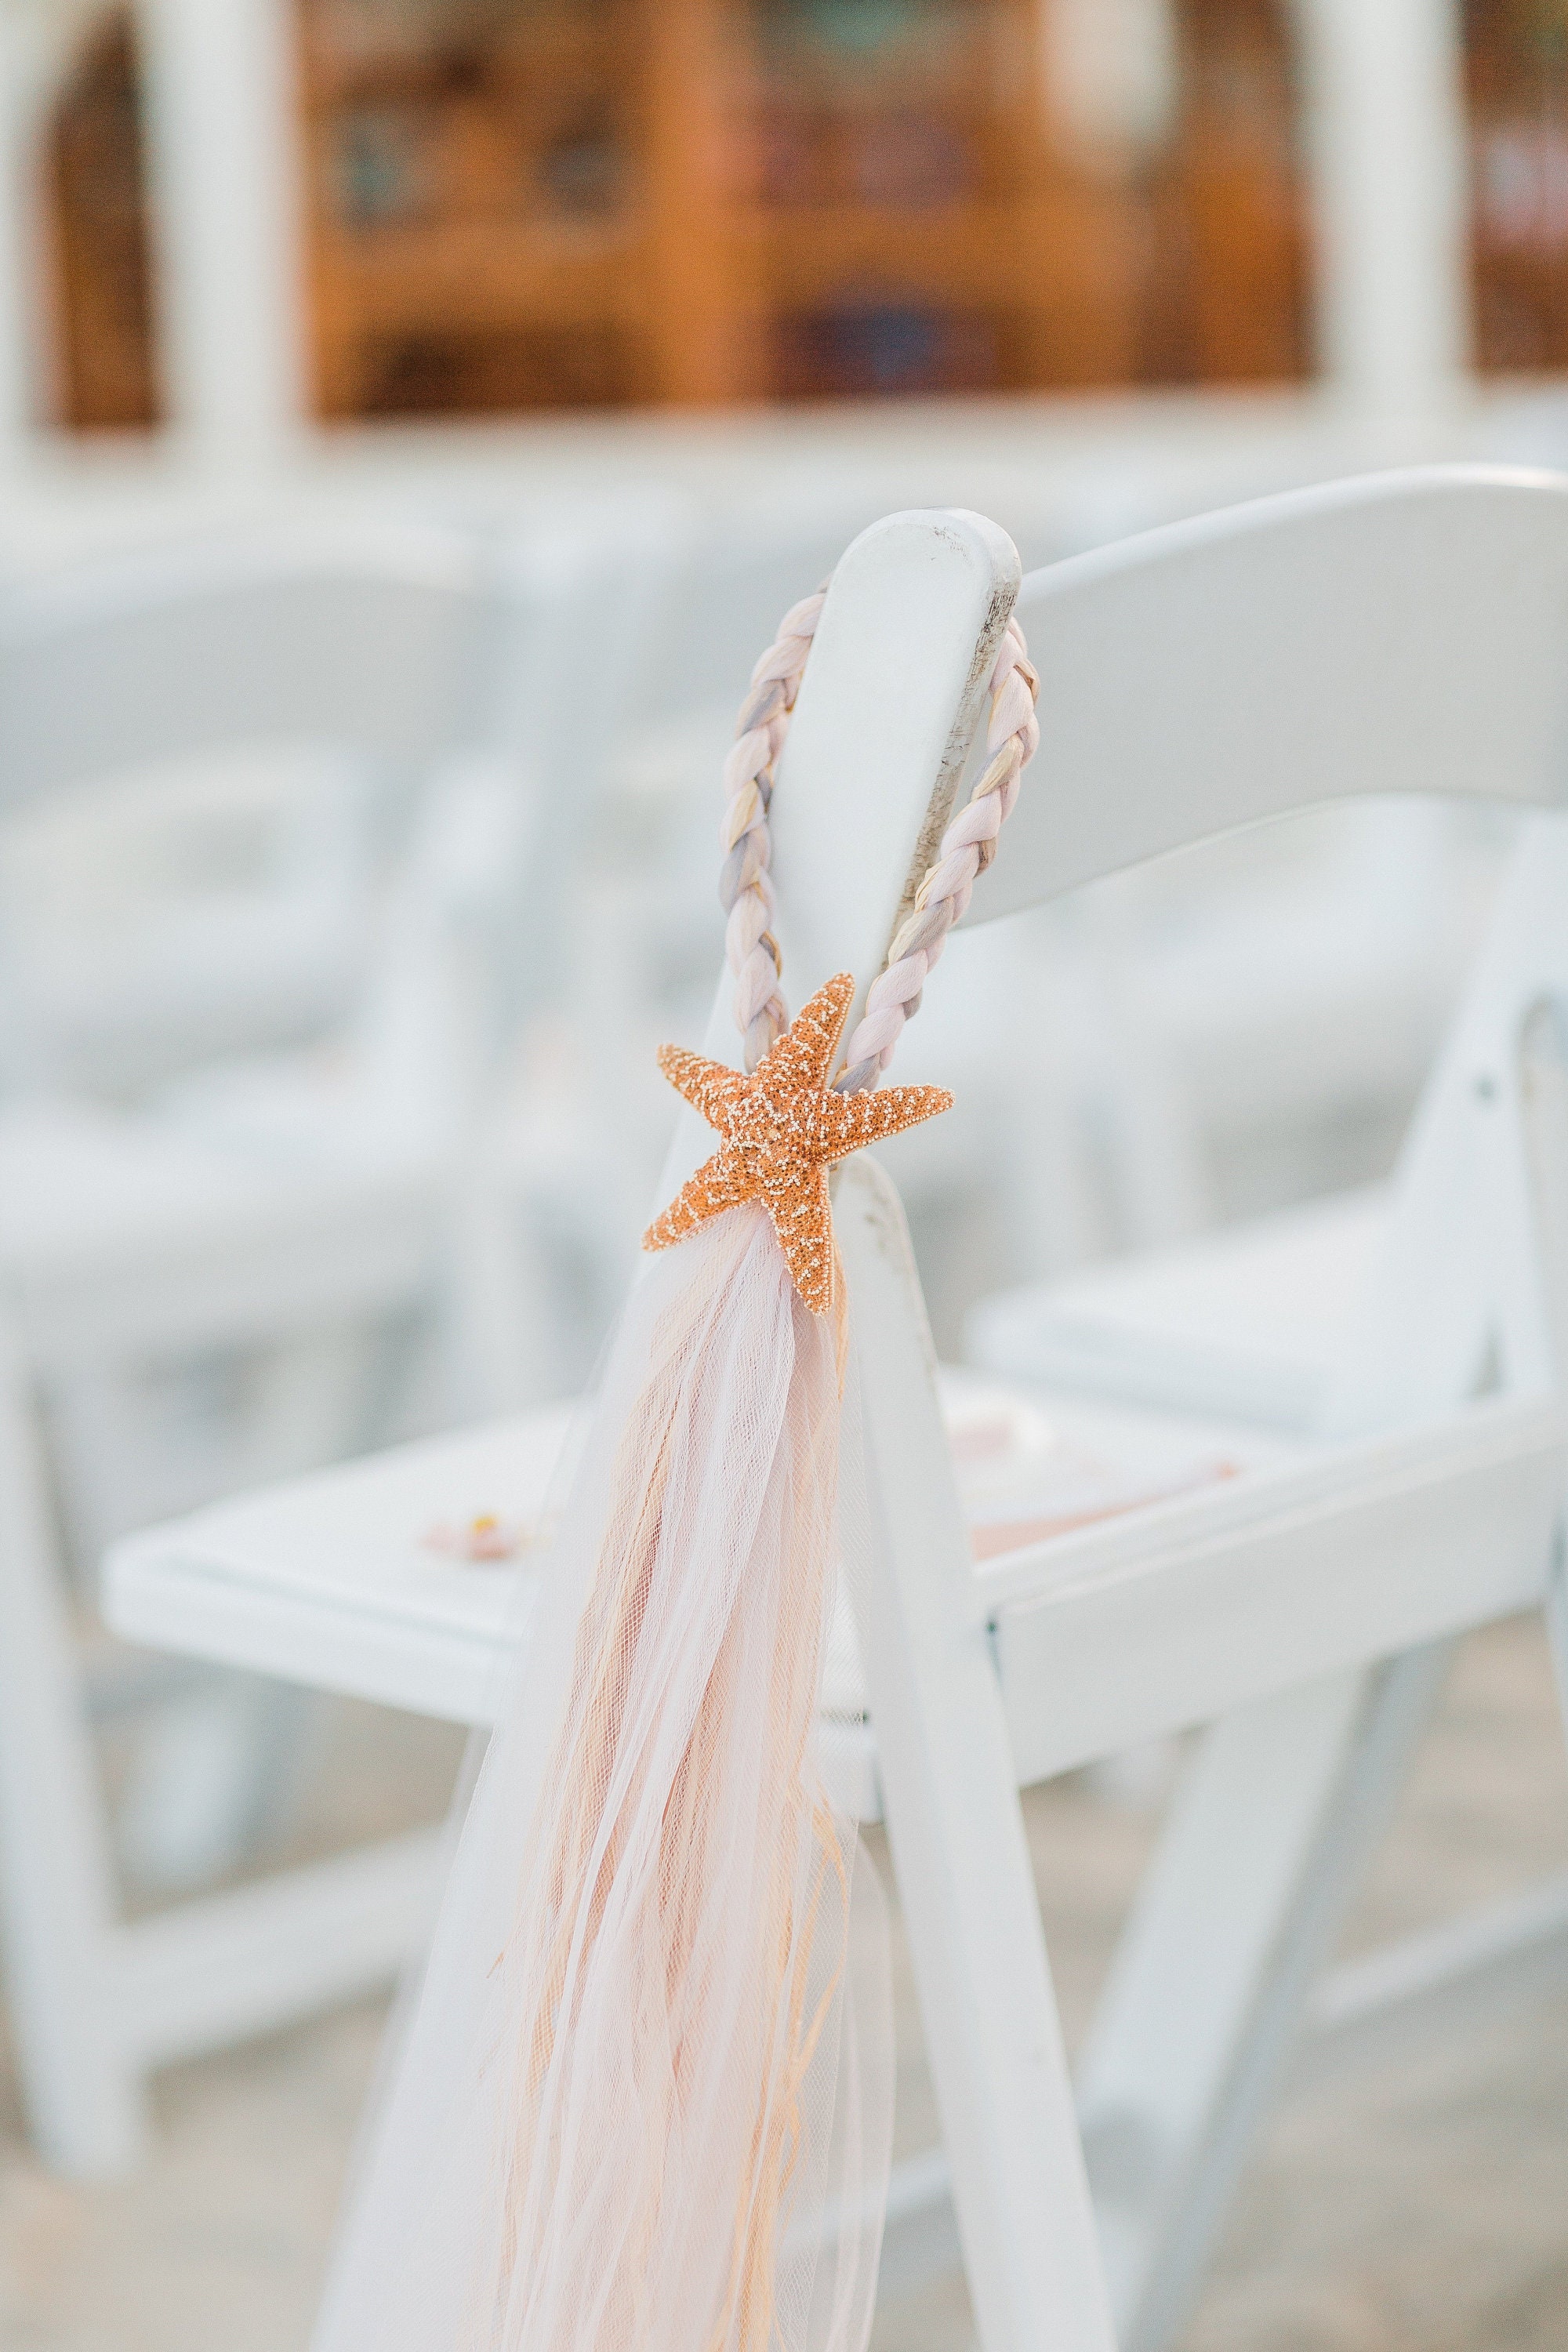 Burlap Bows Pew Aisle Chair Beach Wedding Decor Starfish Wedding Pew Aisle  Chair Bow Decorations Beach Reception Wedding Decorations 